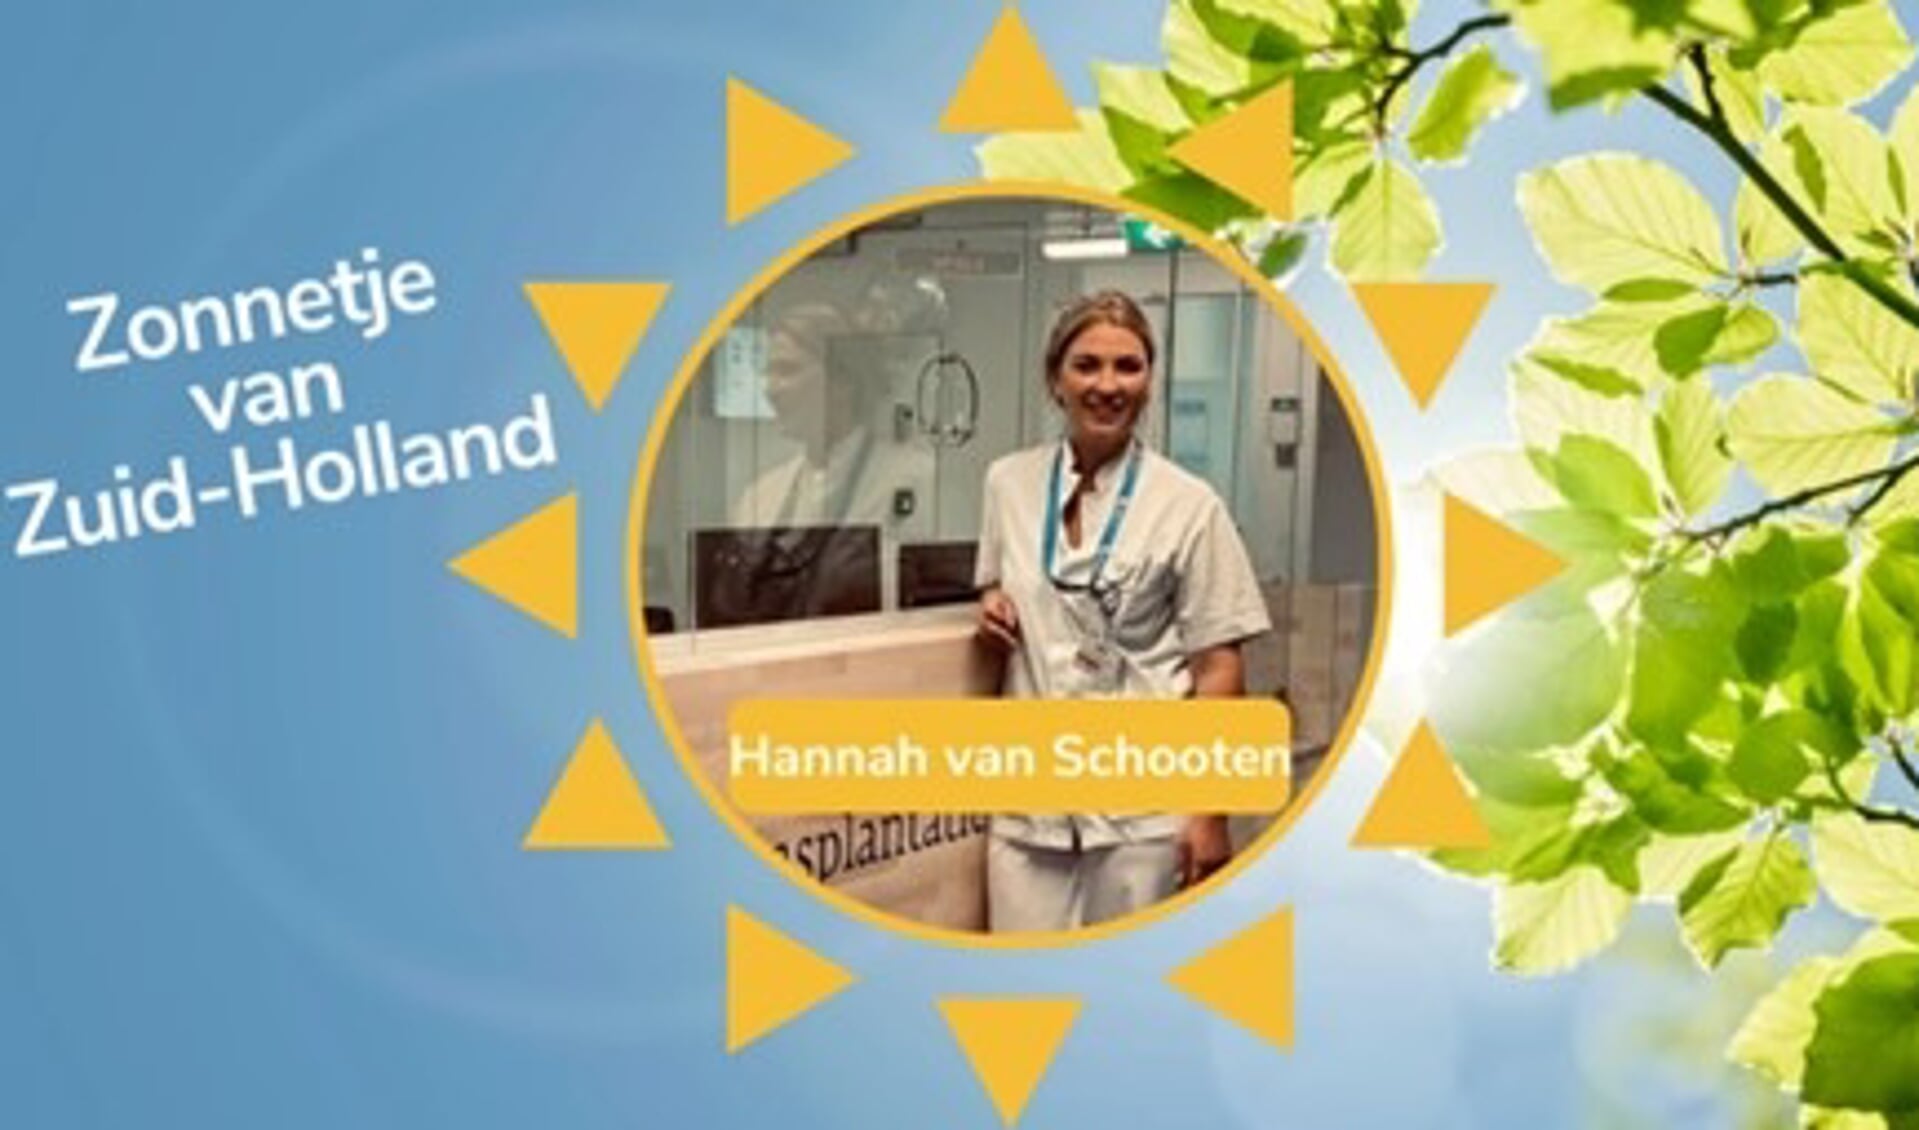 Hannah van Schooten is het Zonnetje van Zuid Holland